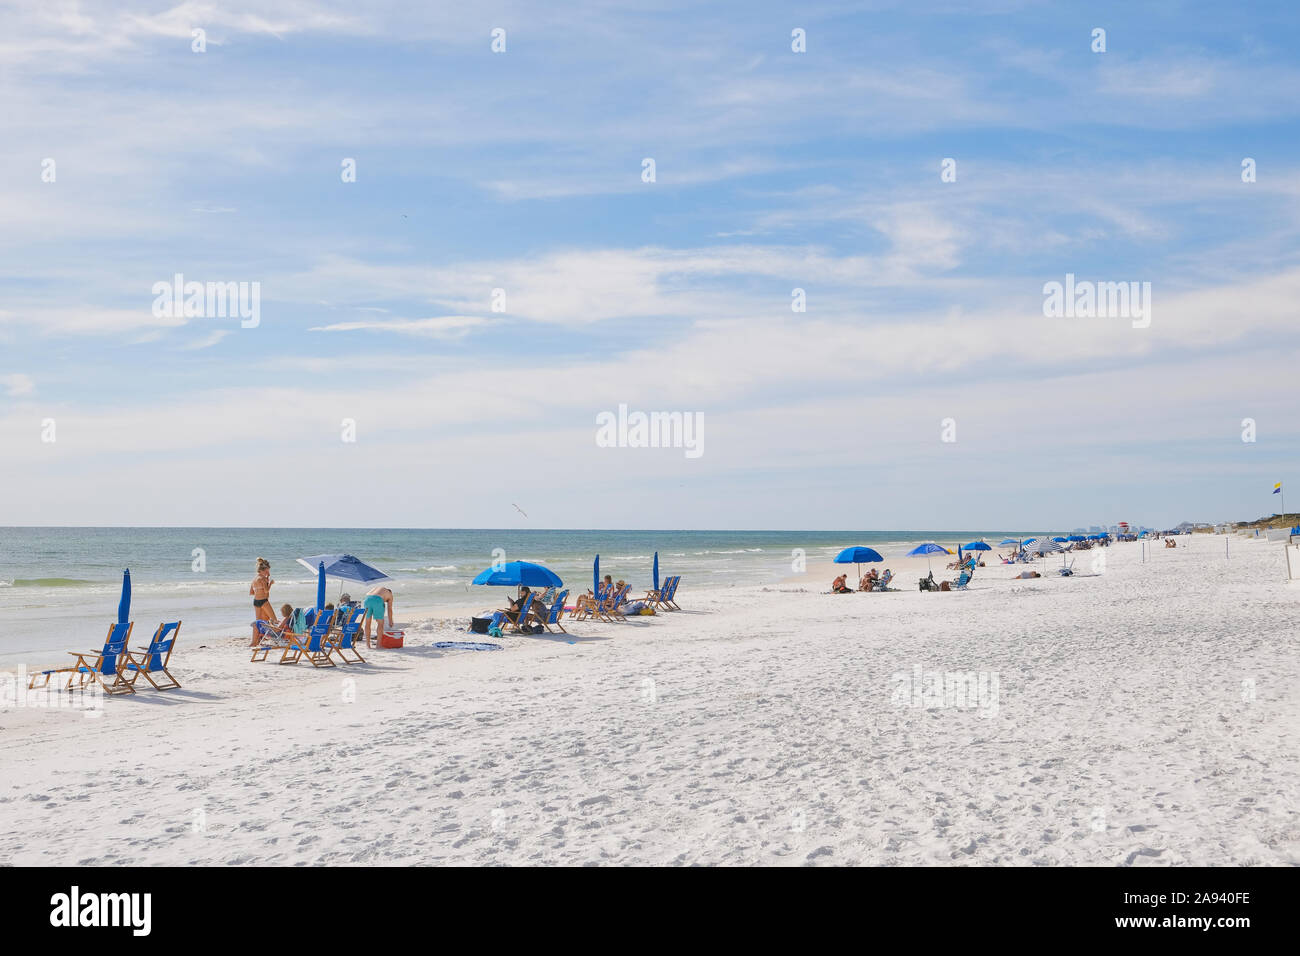 Las personas y familias disfrutando de la playa de arena blanca y playas de la Florida, el Golfo de México, en Seaside, Florida, EE.UU. Foto de stock